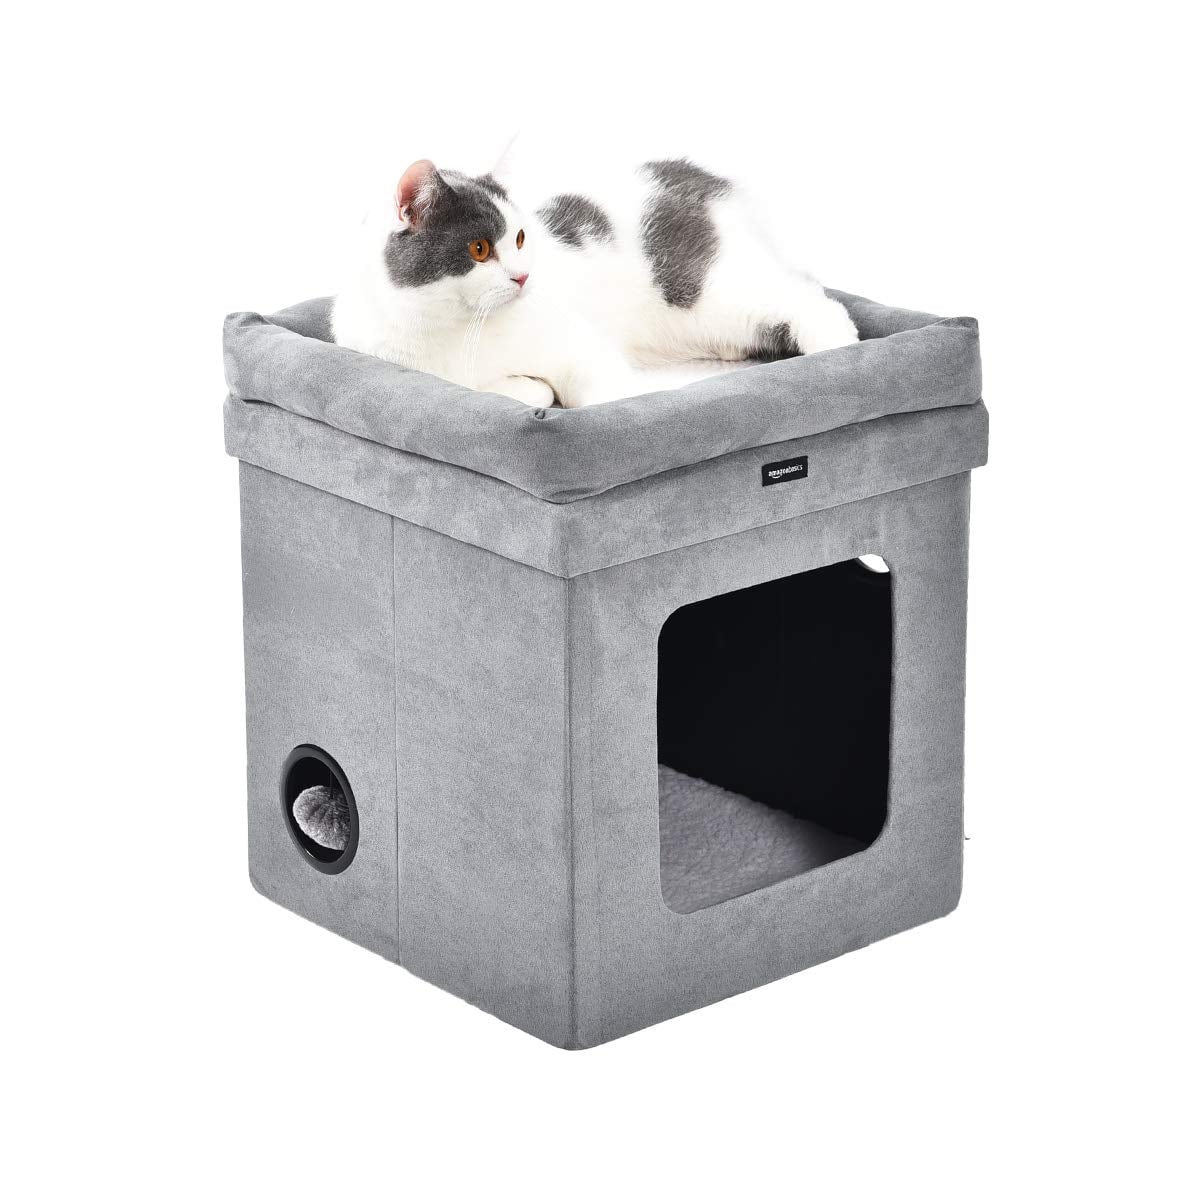 Матерчатый куб для кошки. Икеа куб с кошкой. Вставка в куб для кошки. Zxc Cat кубик.